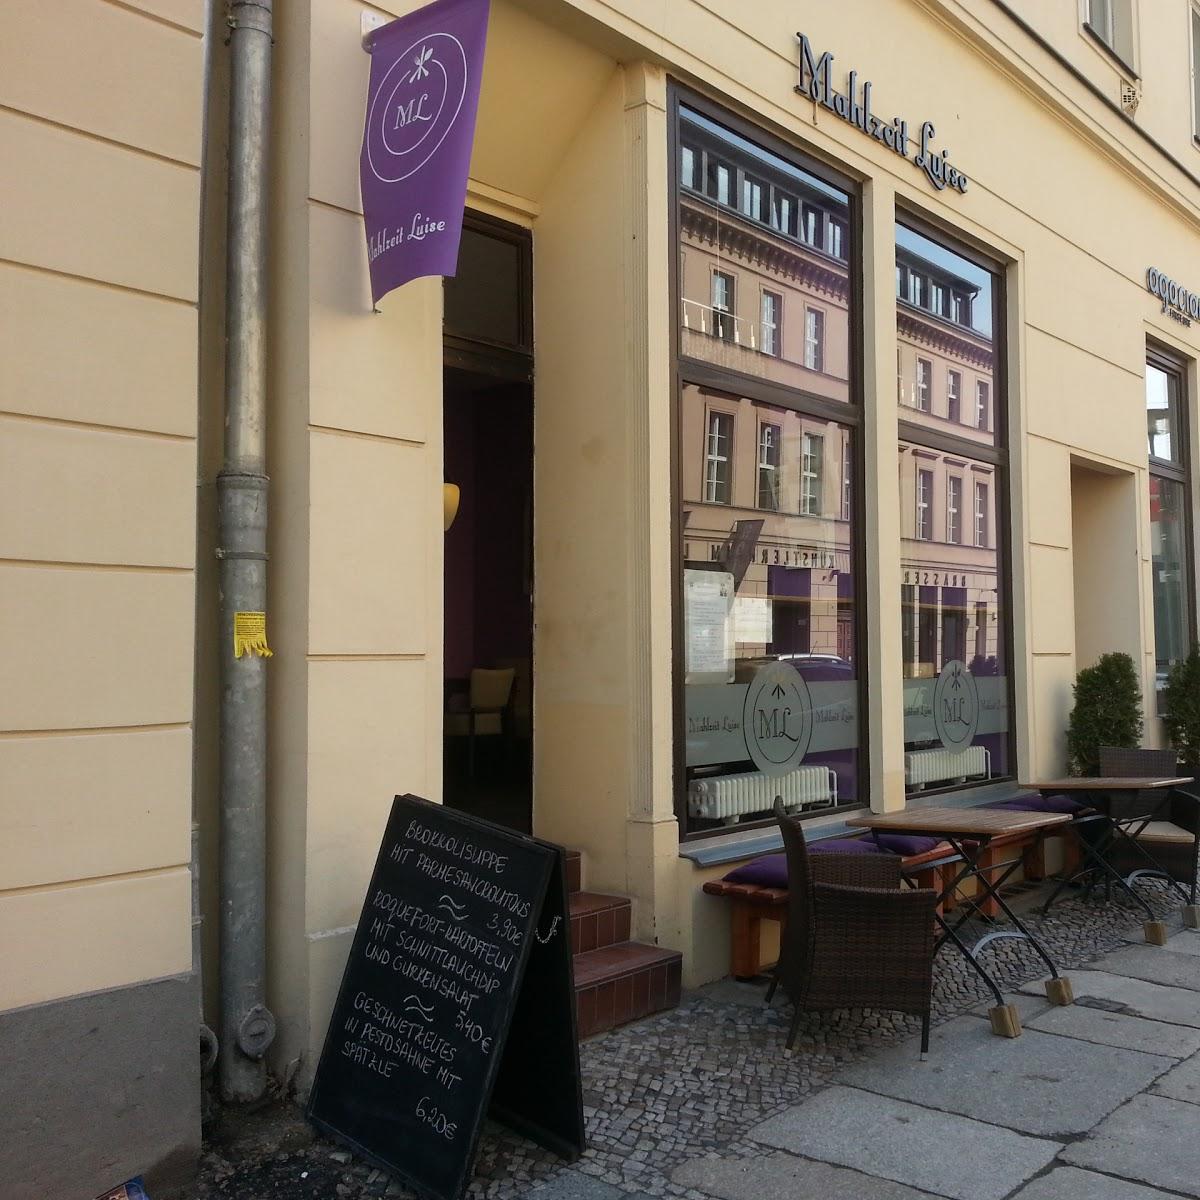 Restaurant "Mahlzeit Luise" in Berlin